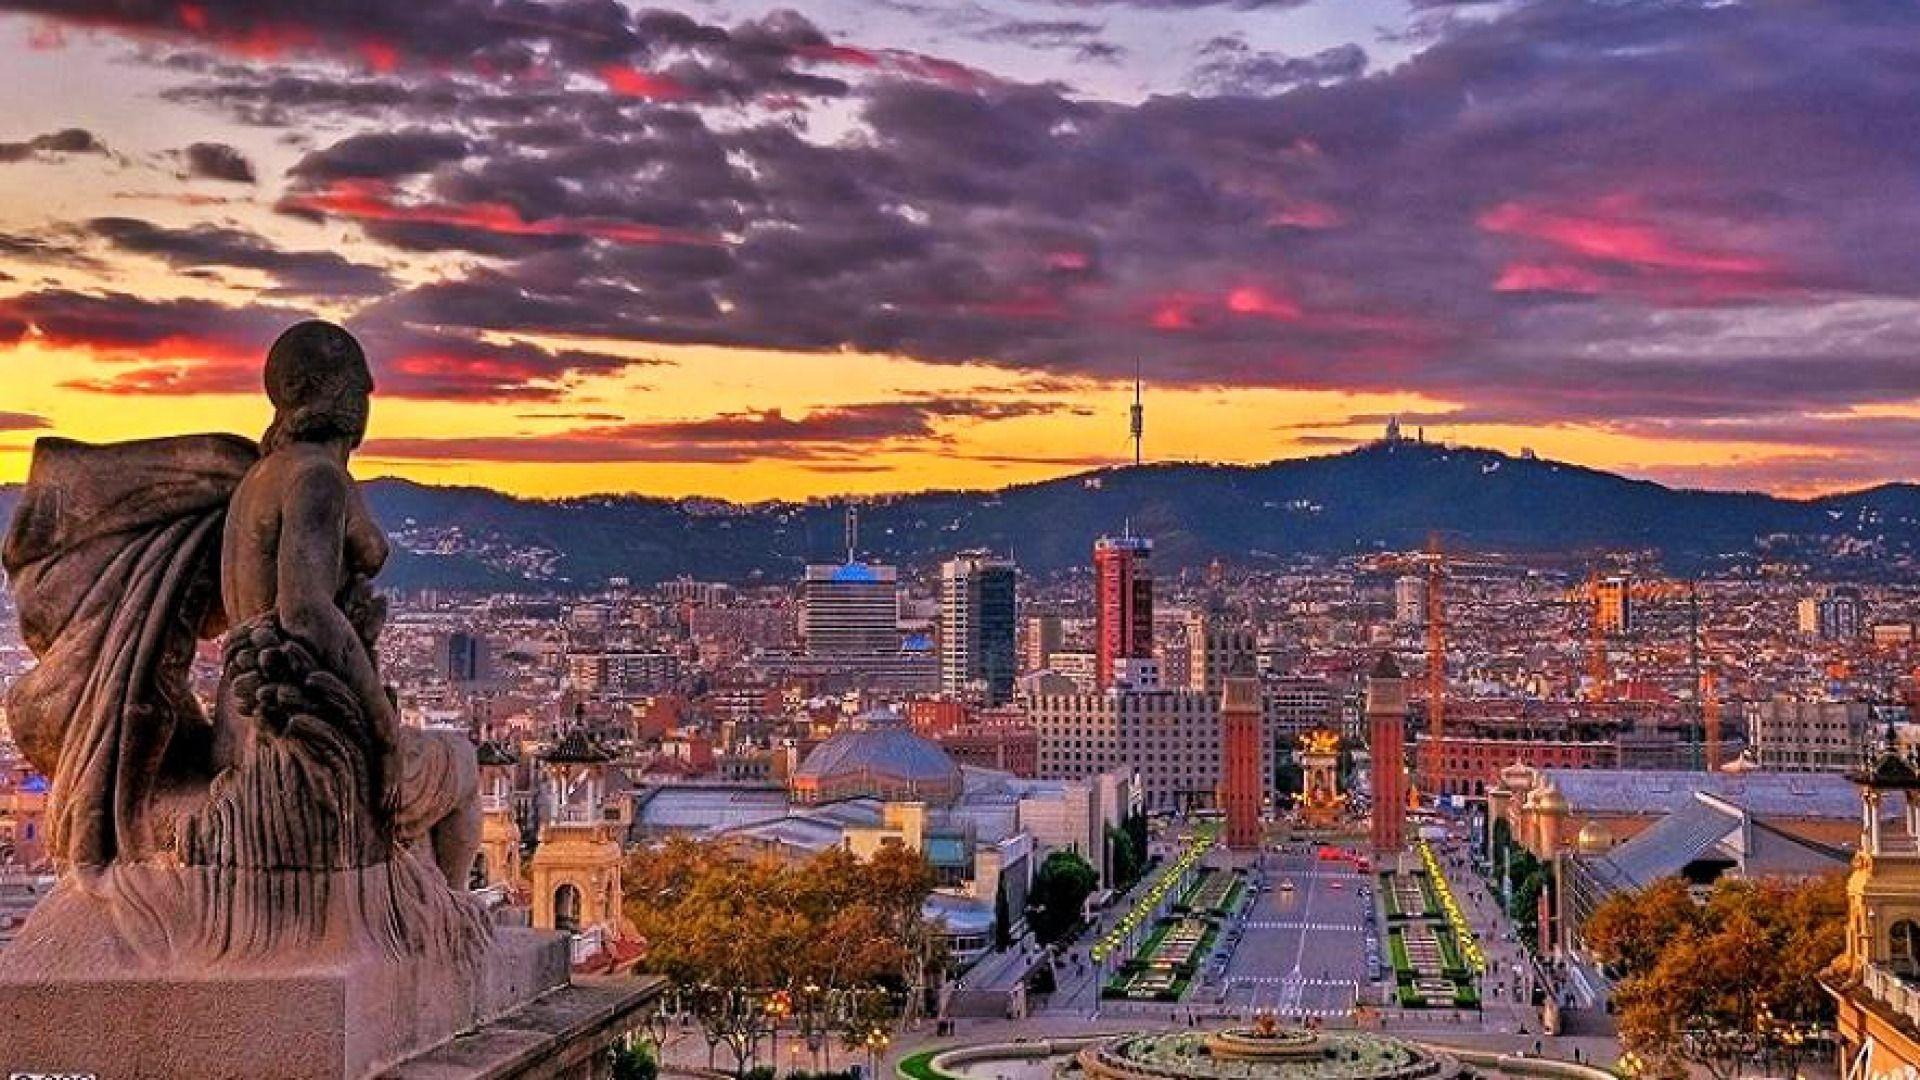 Barcelona Landscape Wallpapers - Top Free Barcelona Landscape